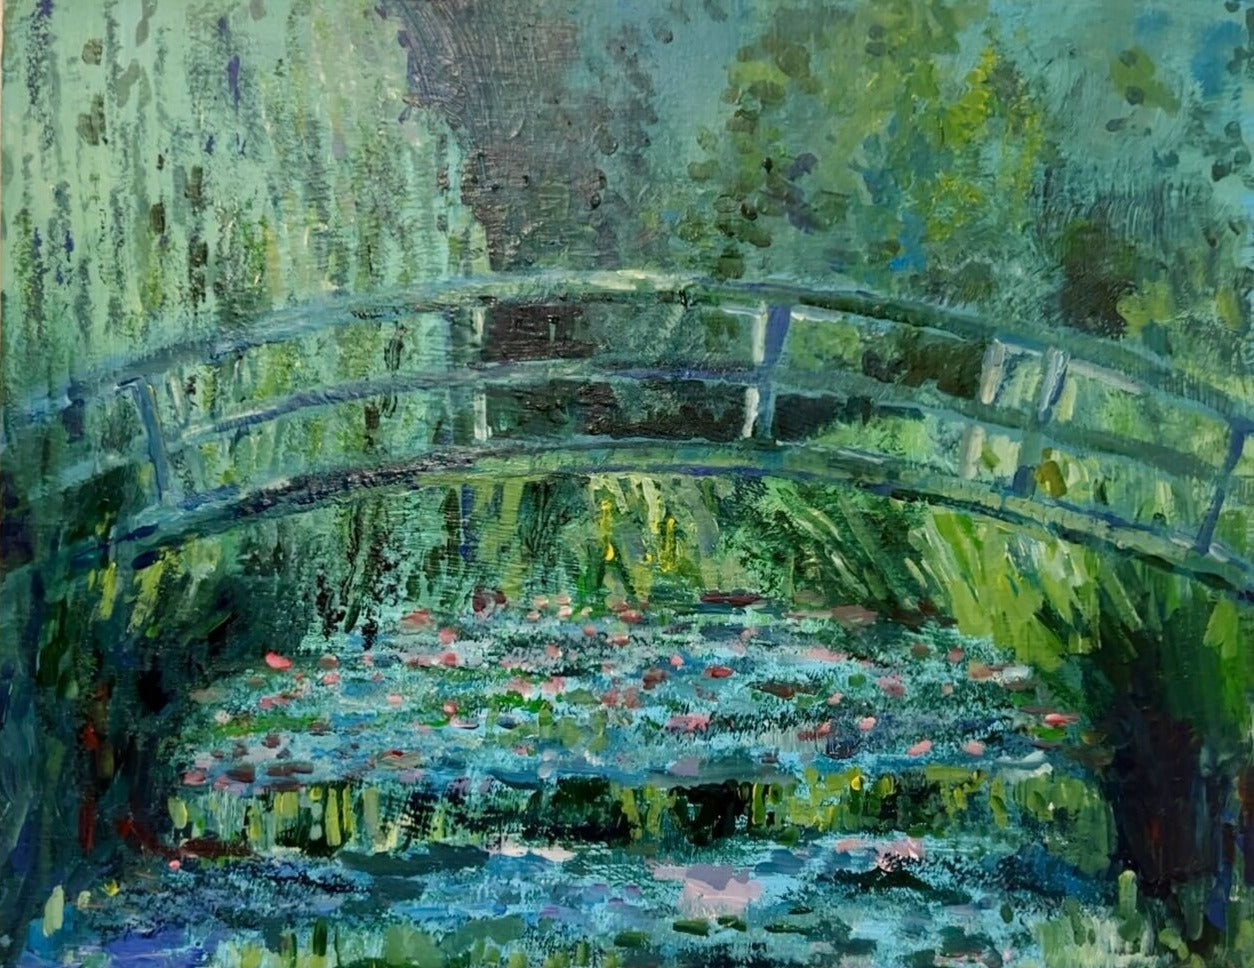 【上野/根津】10月21日(土) 16:30-18:30 | クロード・モネ | ジヴェルニーの日本の橋と睡蓮の池（The Japanese Footbridge and the Water Lily Pool by Claude Monet at Ueno/Nezu）